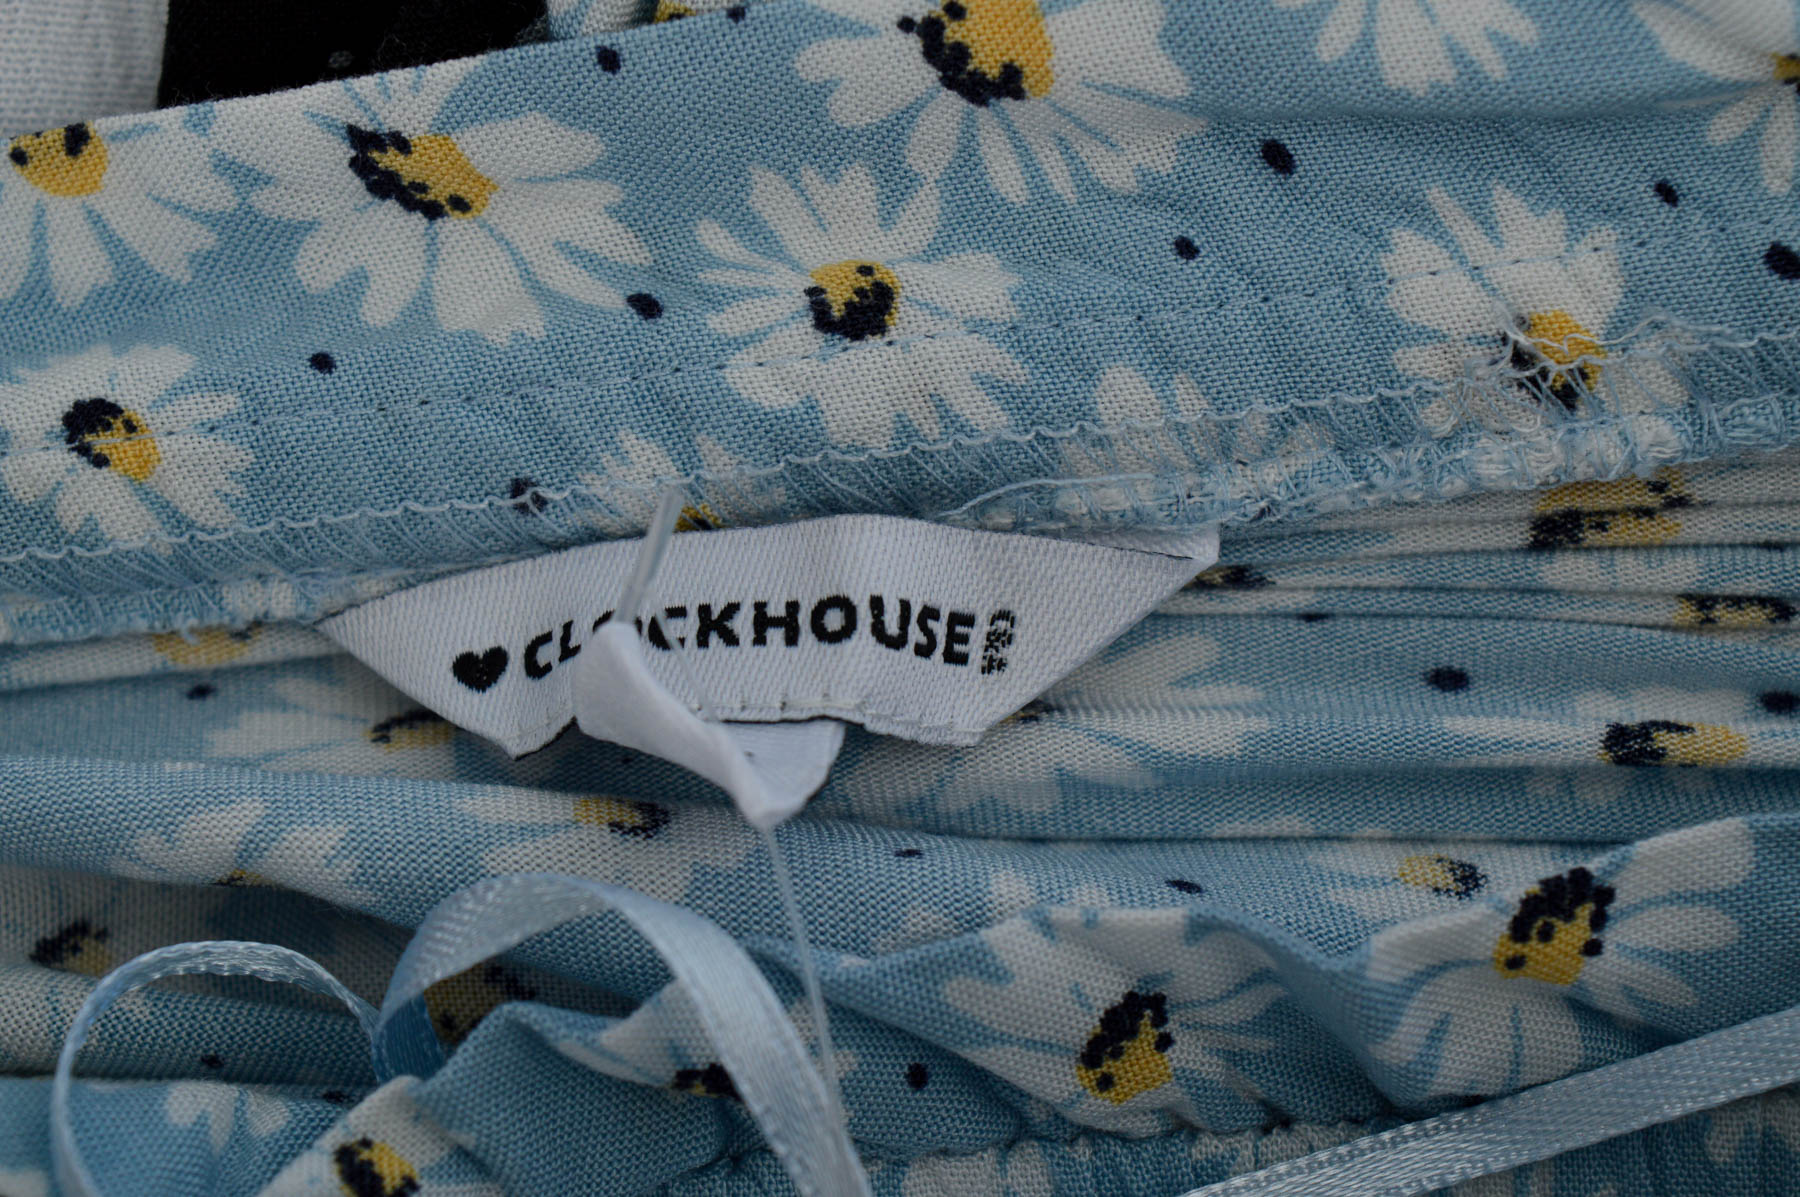 Γυναικείо πουκάμισο - Clockhouse - 2